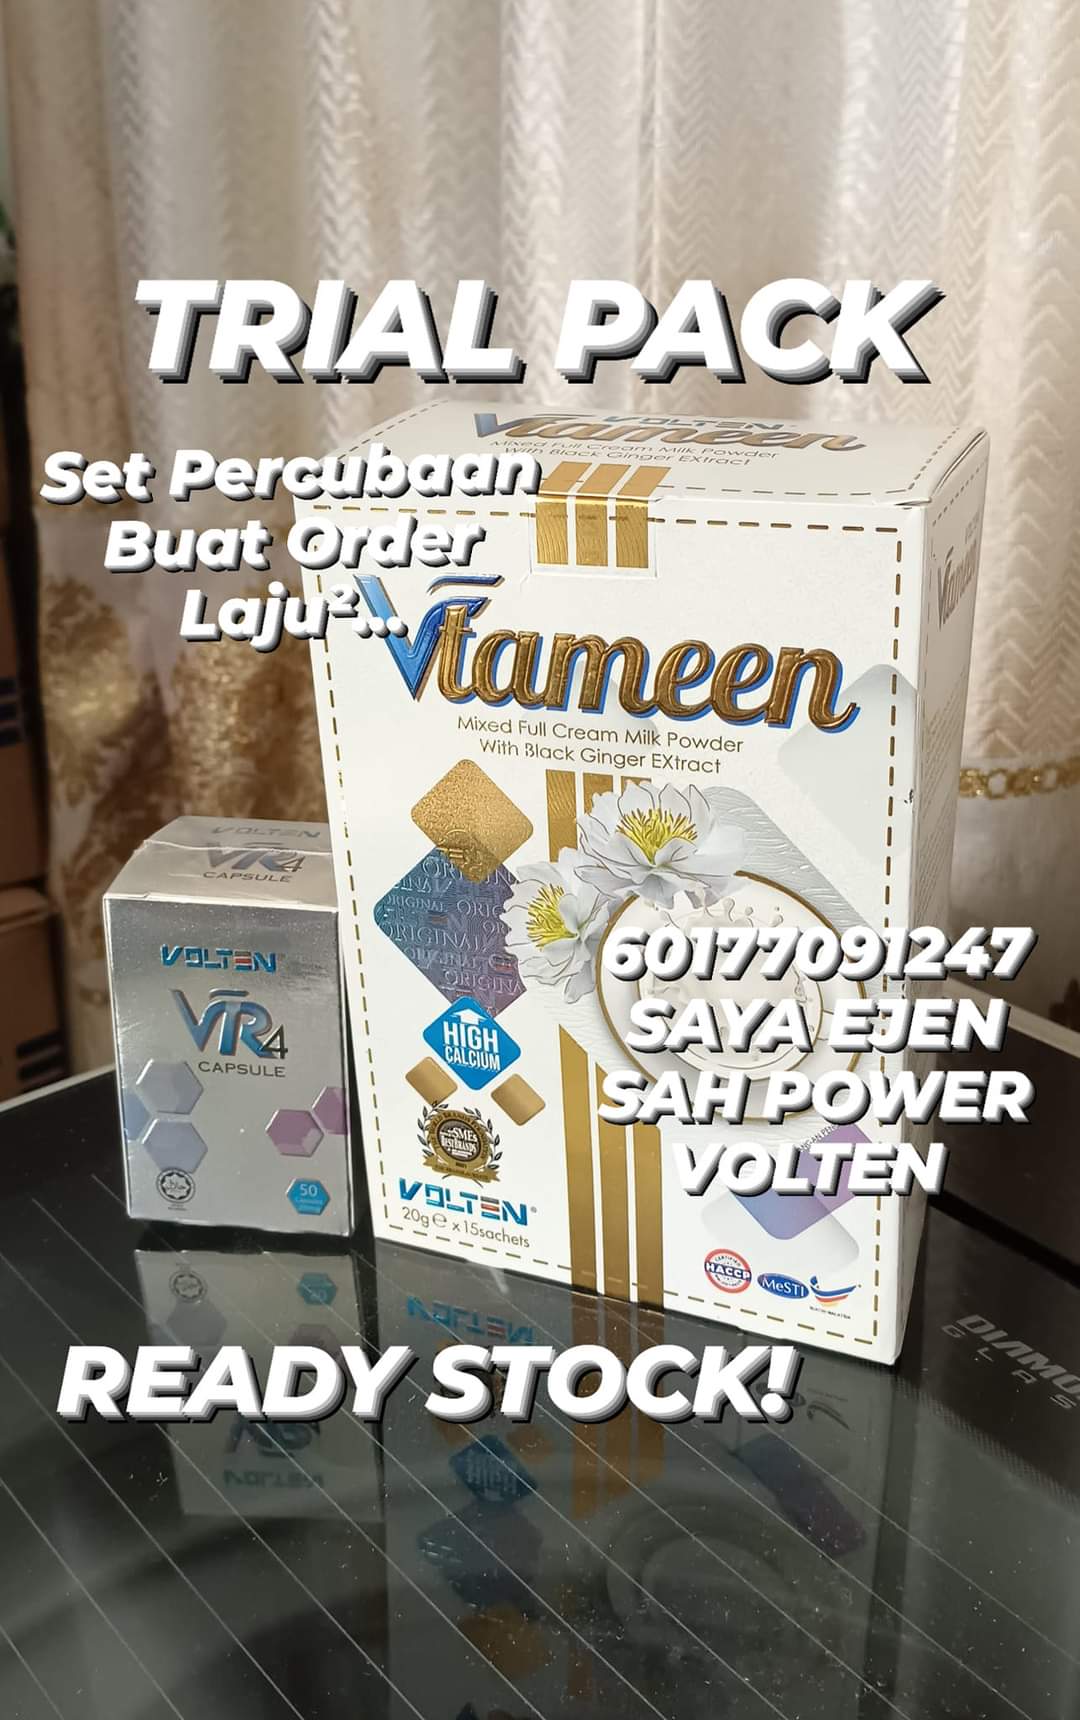 Trial Pack - Vtameen Susu + VR4 Kapsul